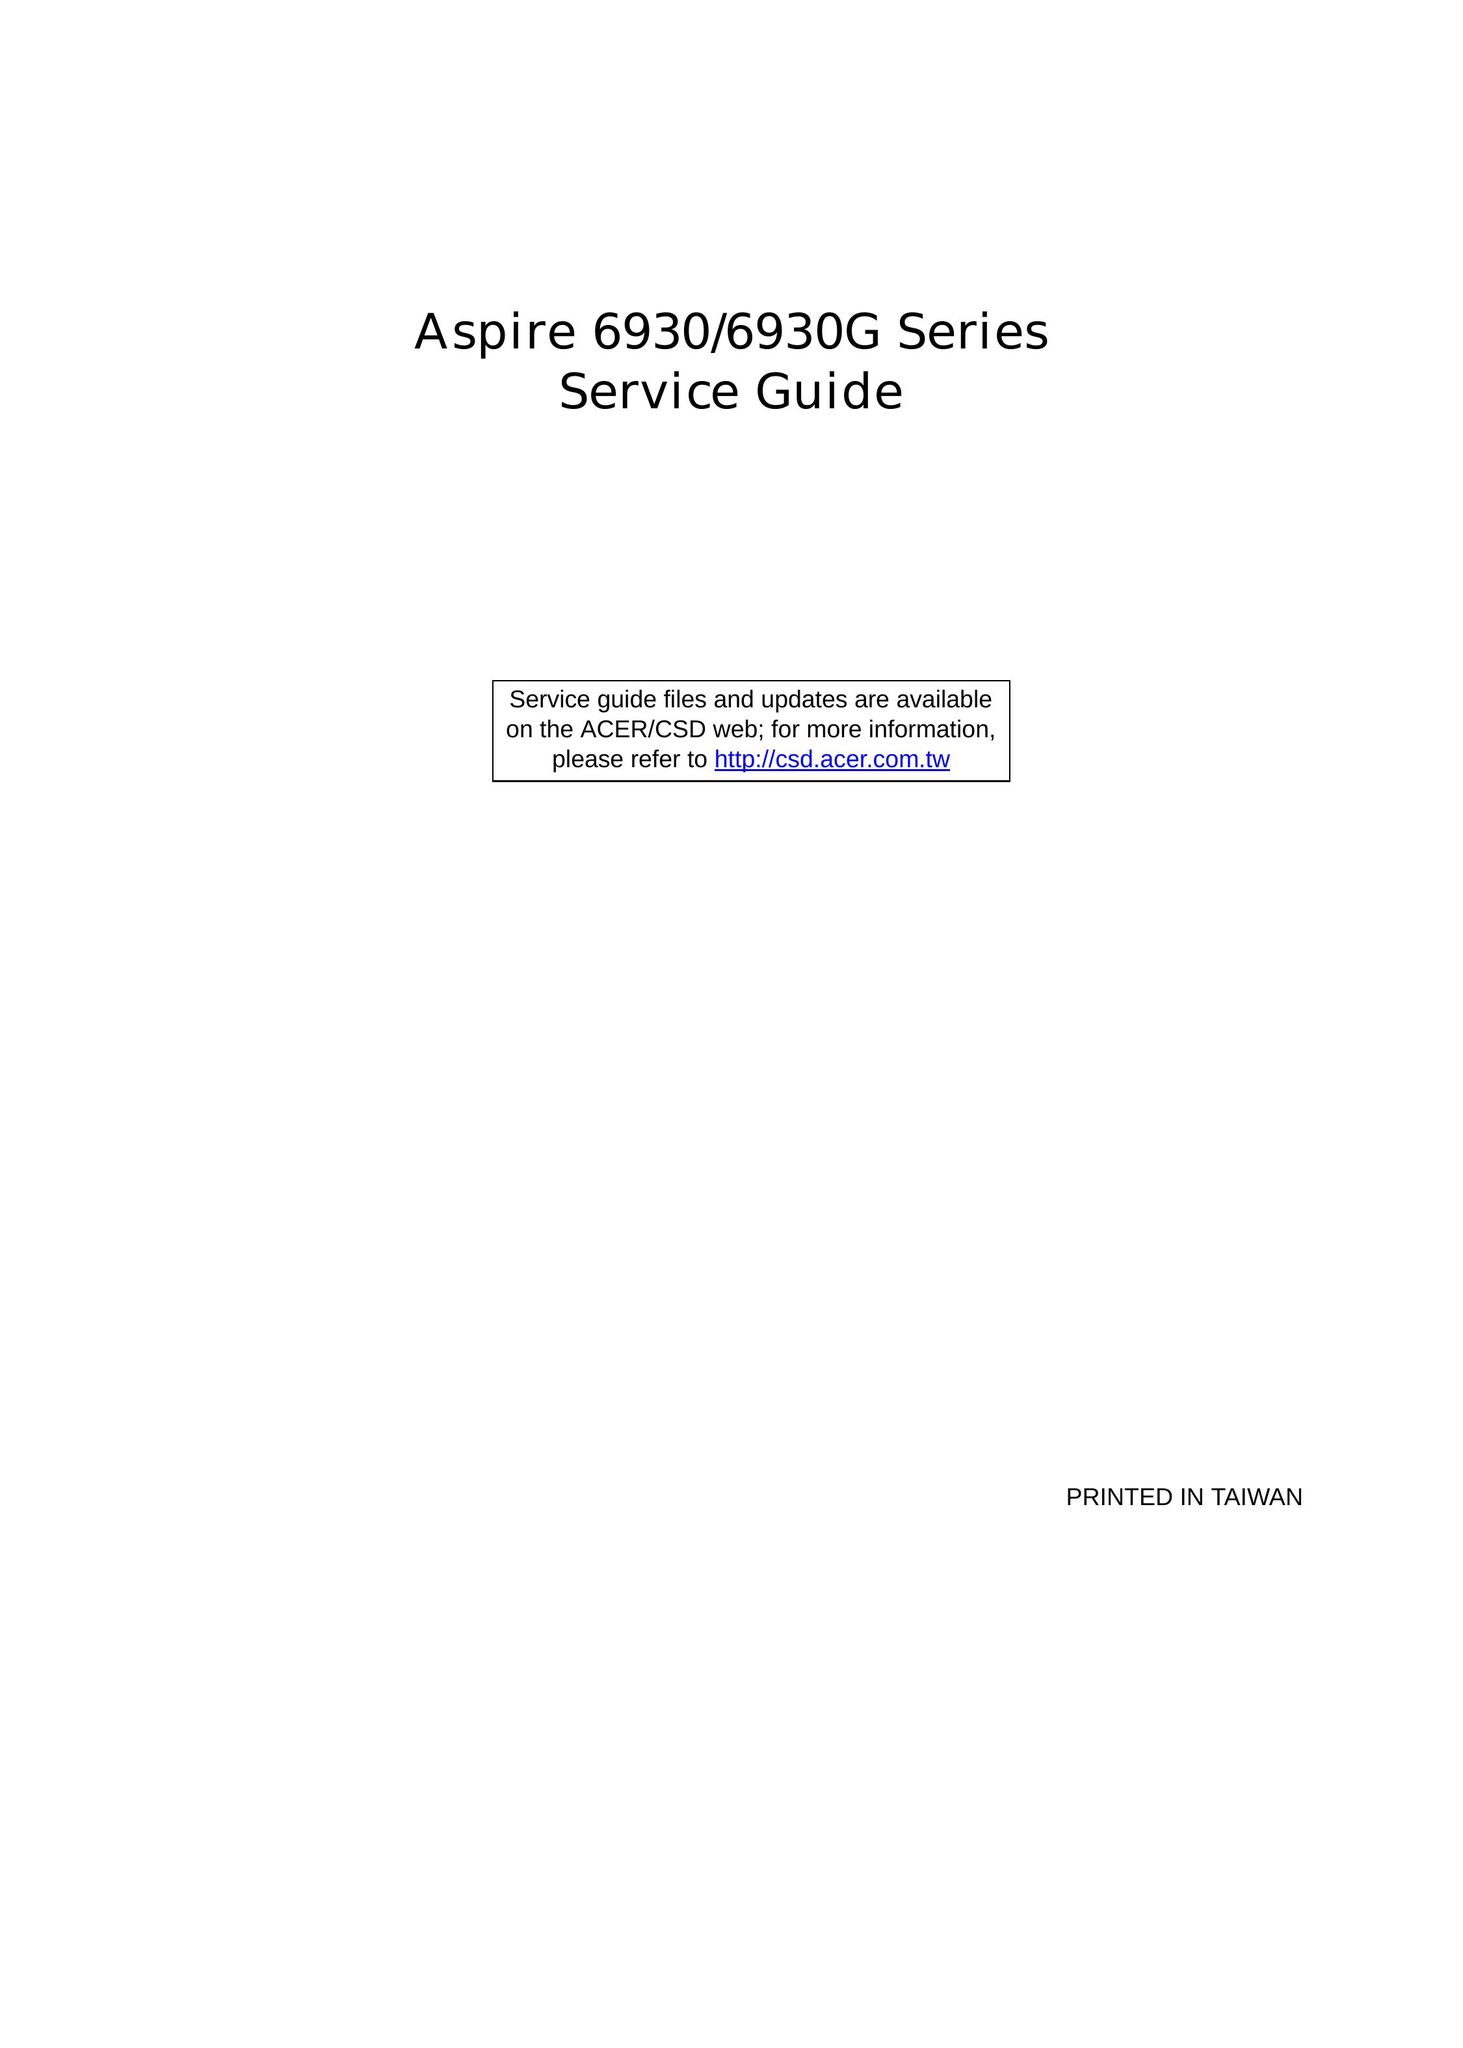 Aspire Digital 6930 Laptop User Manual